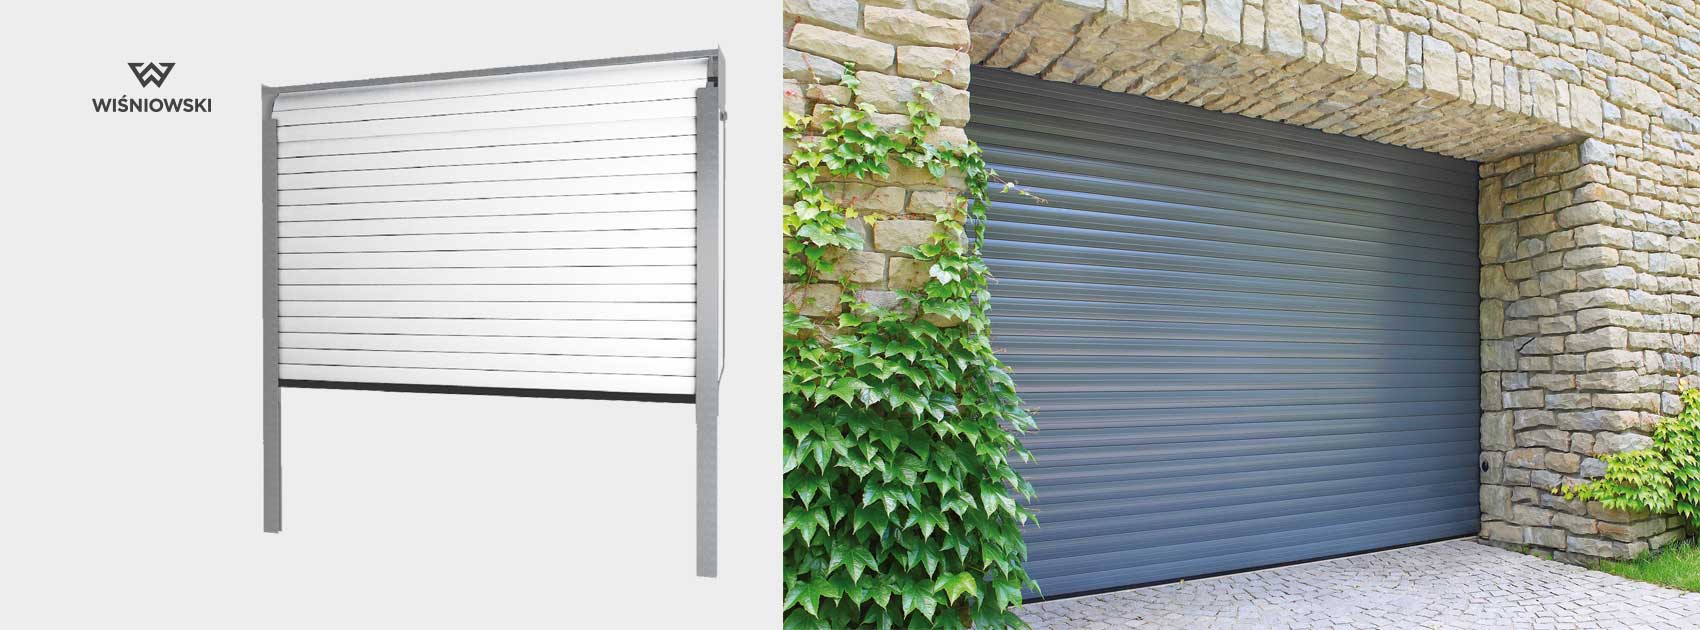 Serrande Avvolgibili Per Garage: Elettriche, in Alluminio